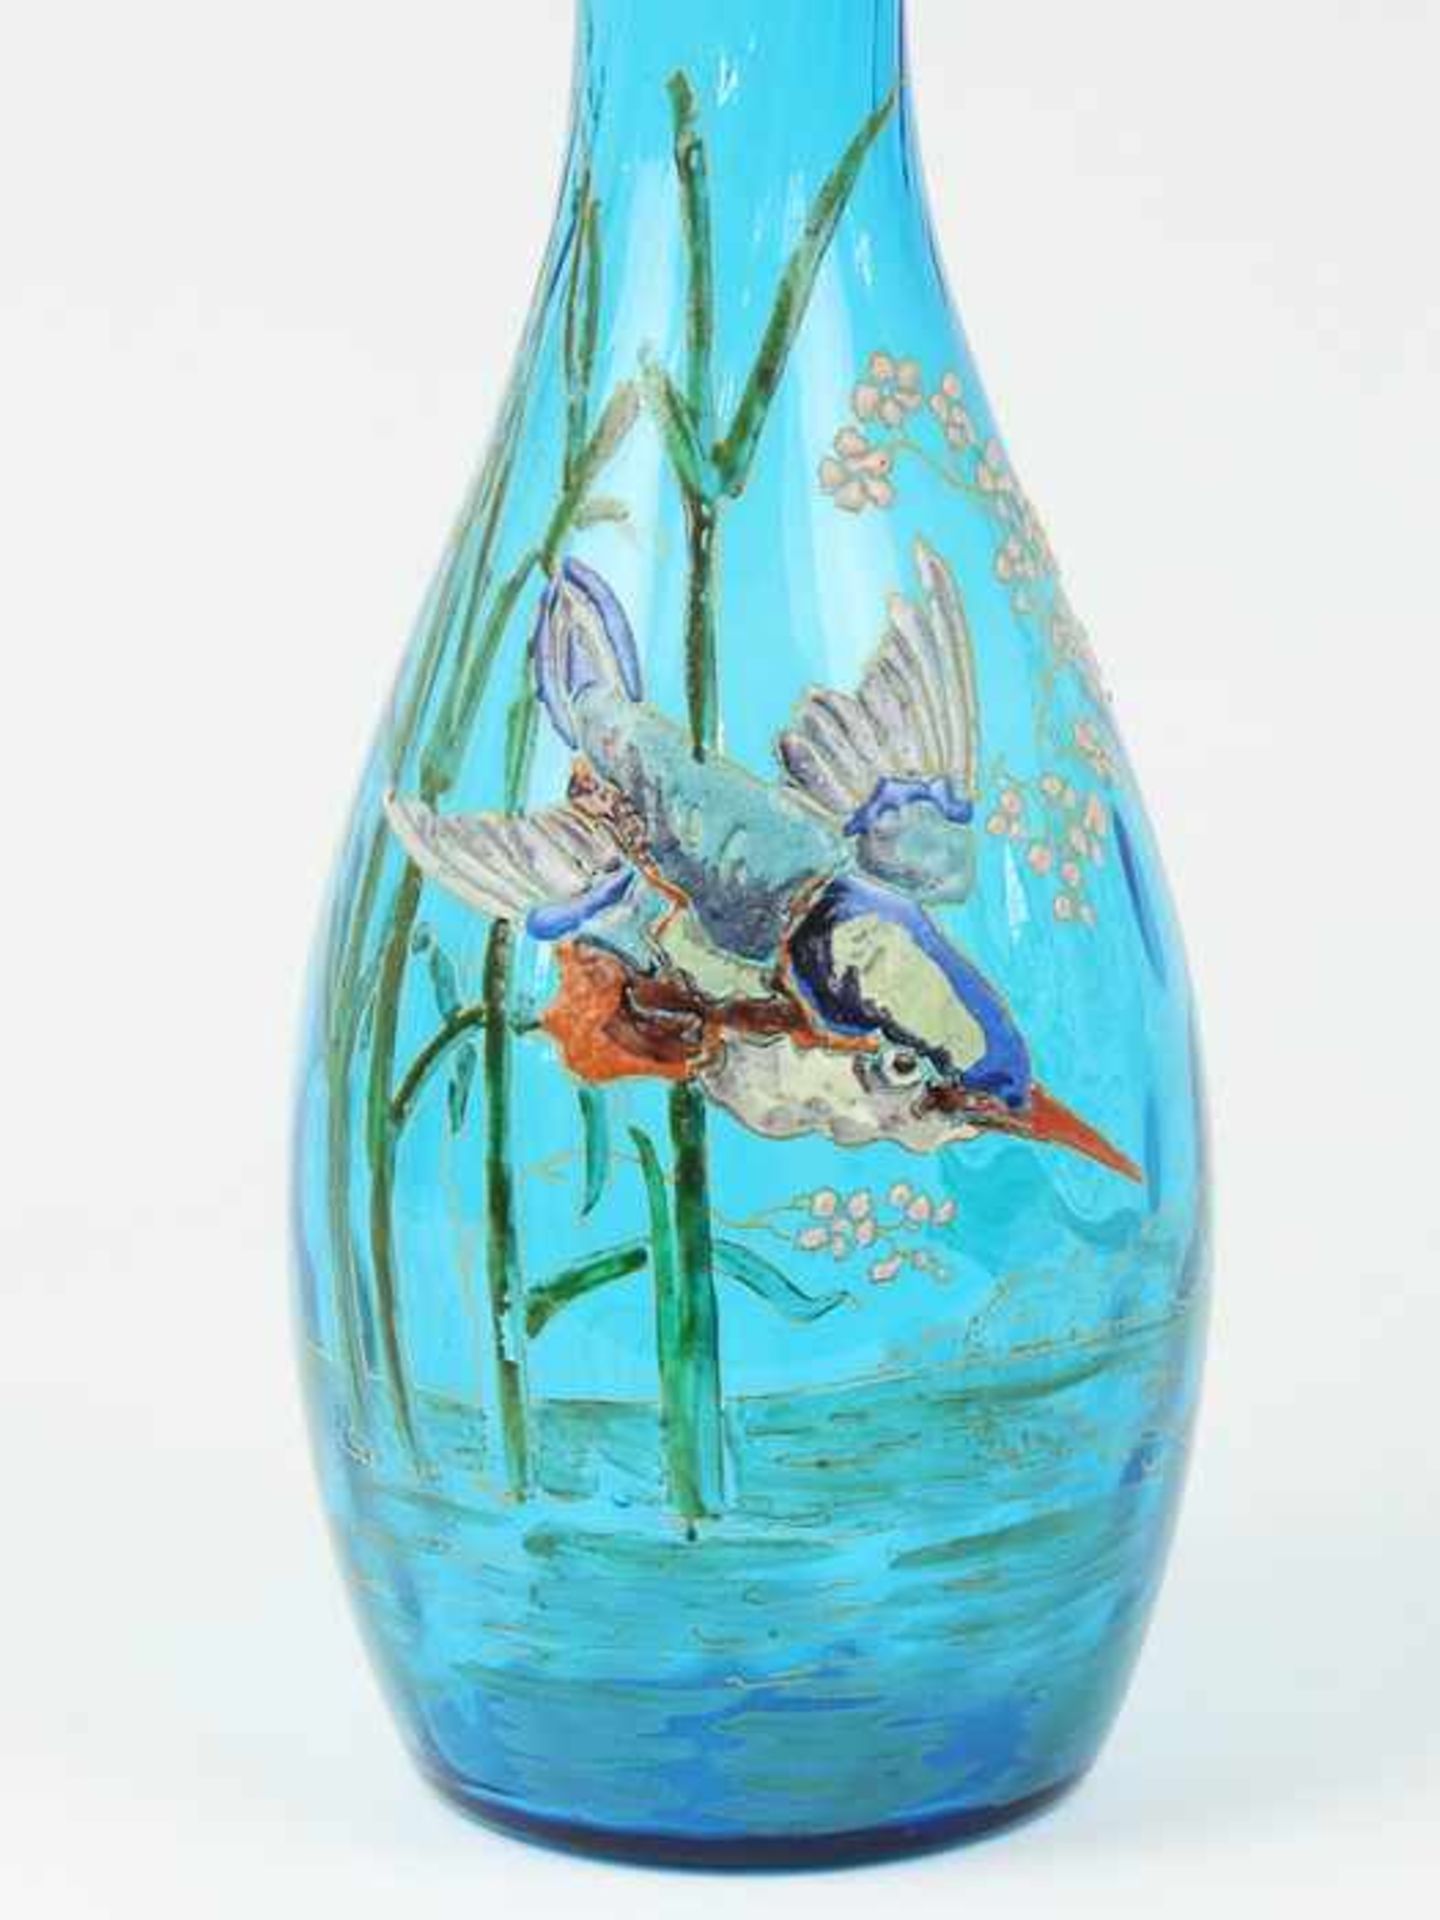 Legras - Vaseum 1900, Jugendstil, Legras & Cie, Verreries de Saìnt-Denis, türkisfarbenes Glas, - Image 2 of 2